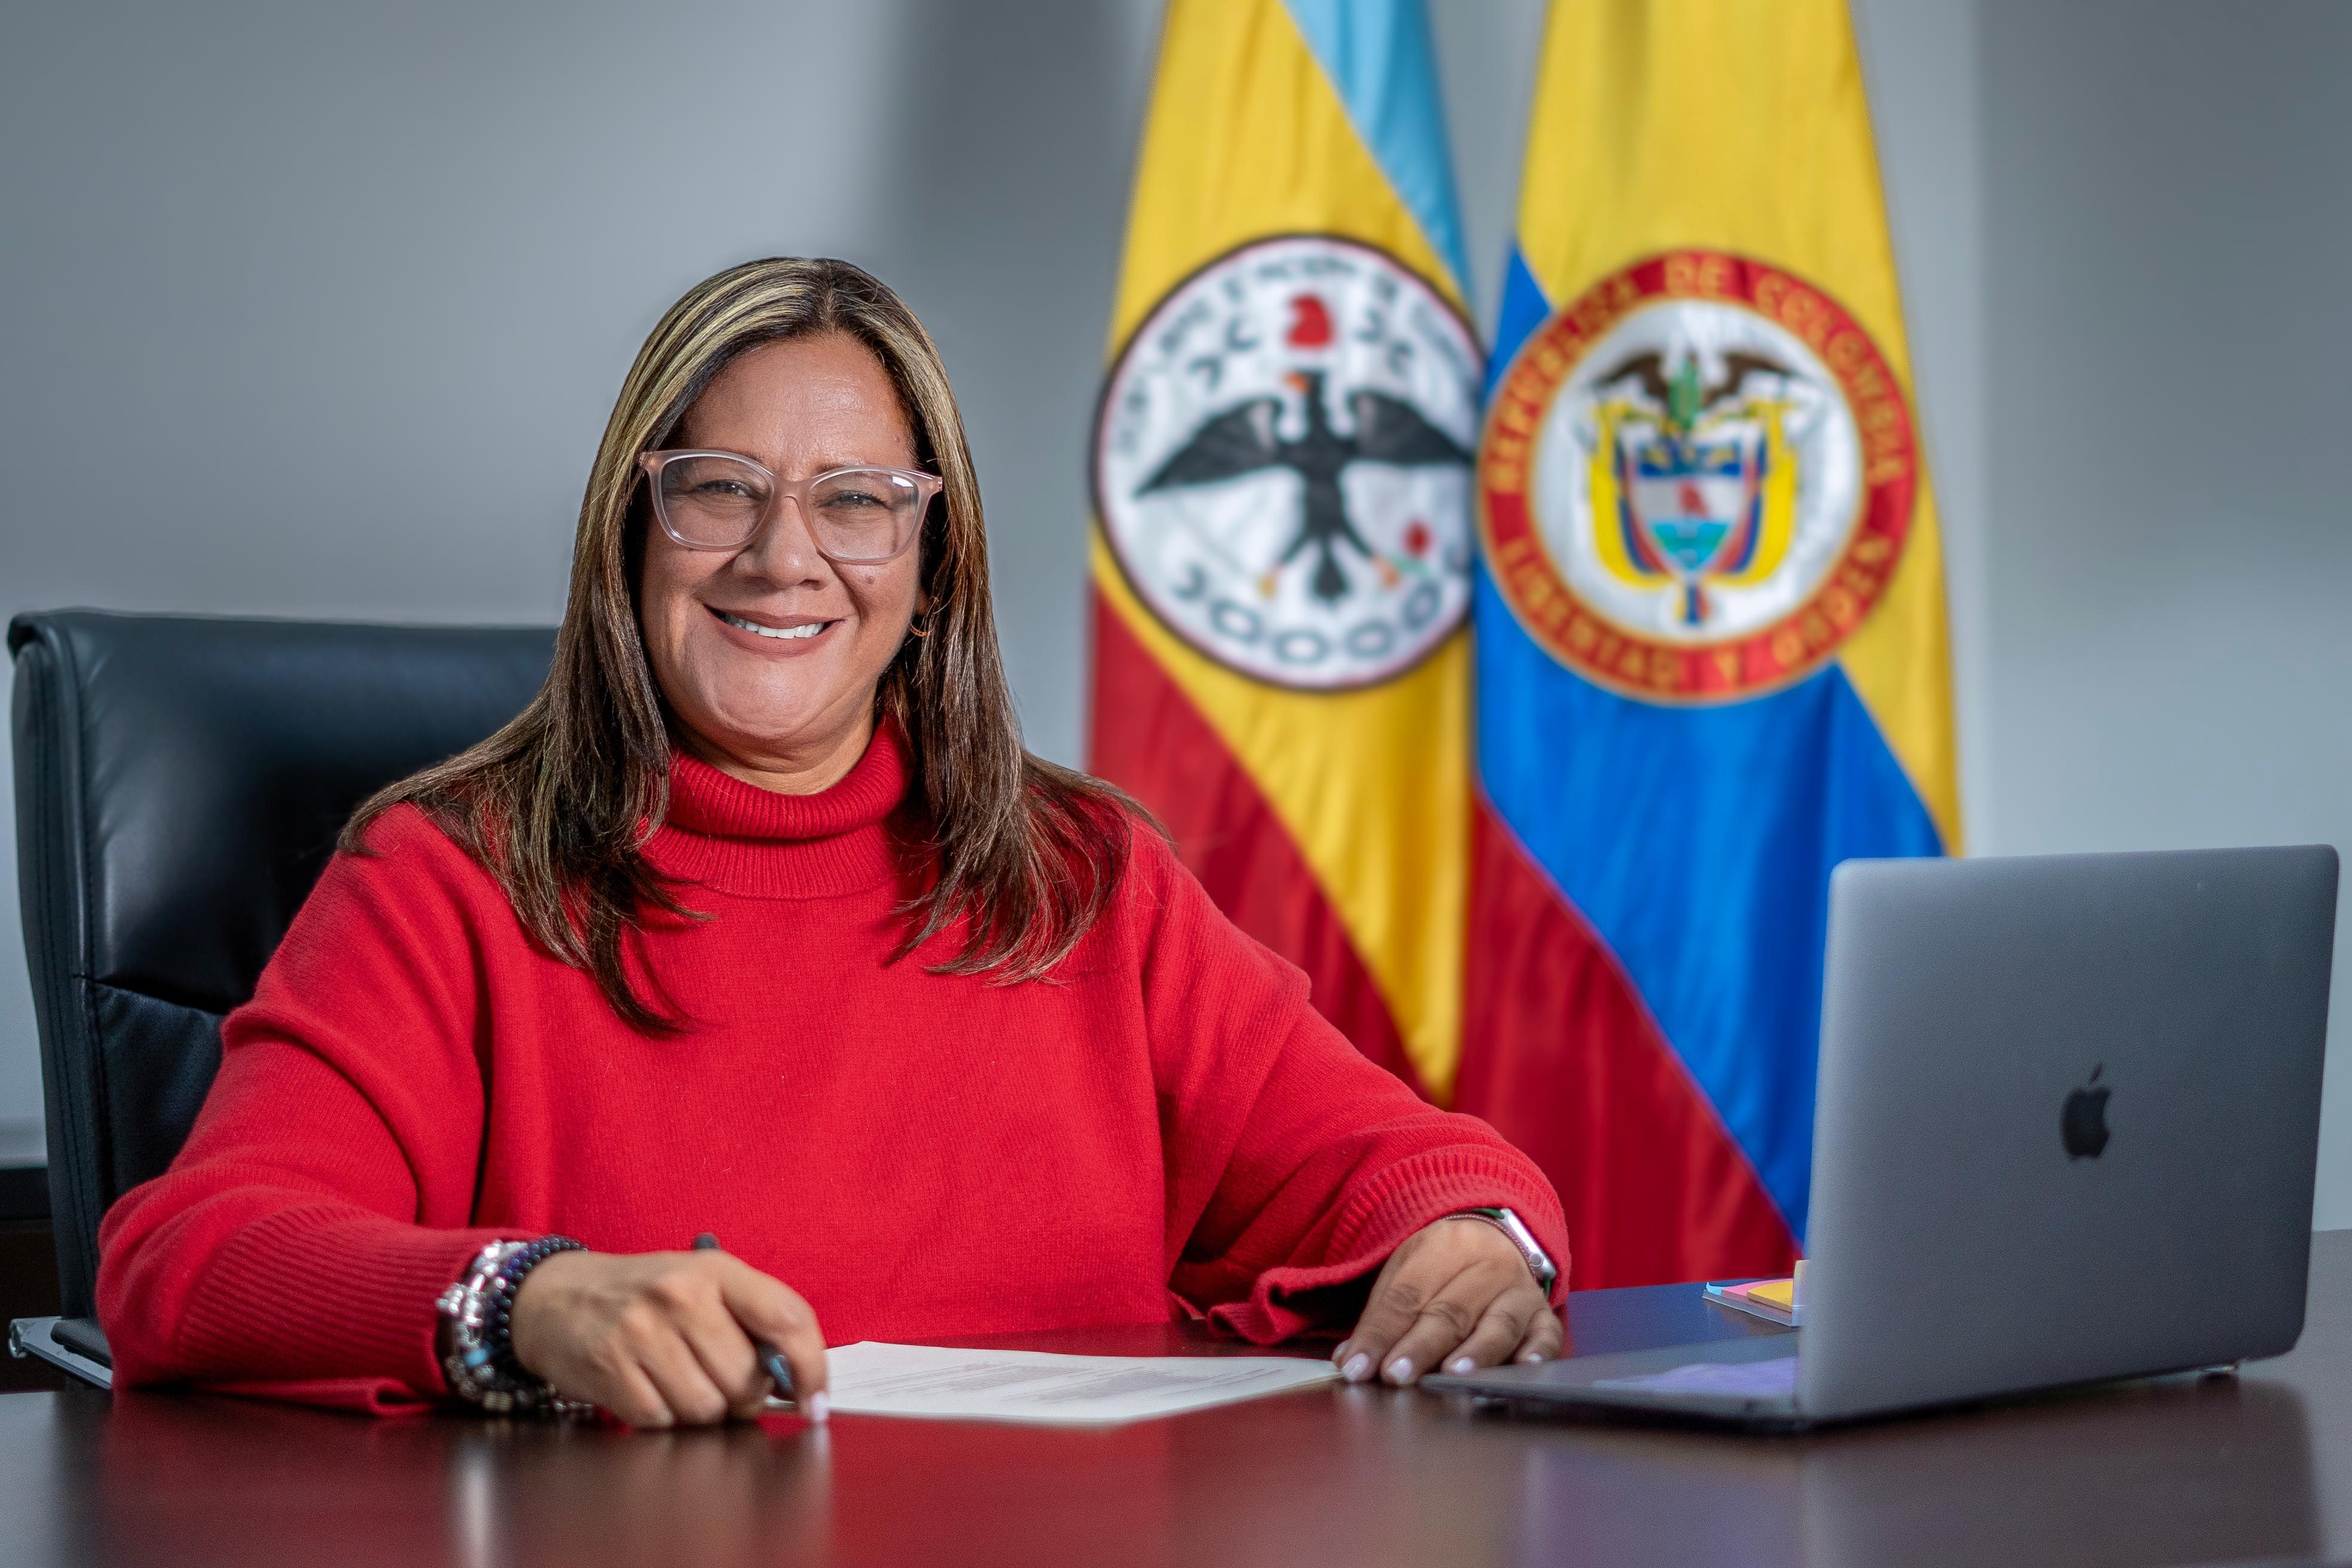 Adriana Lucía Melo Melo nombrada Secretaria de Desarrollo e Inclusión Social

